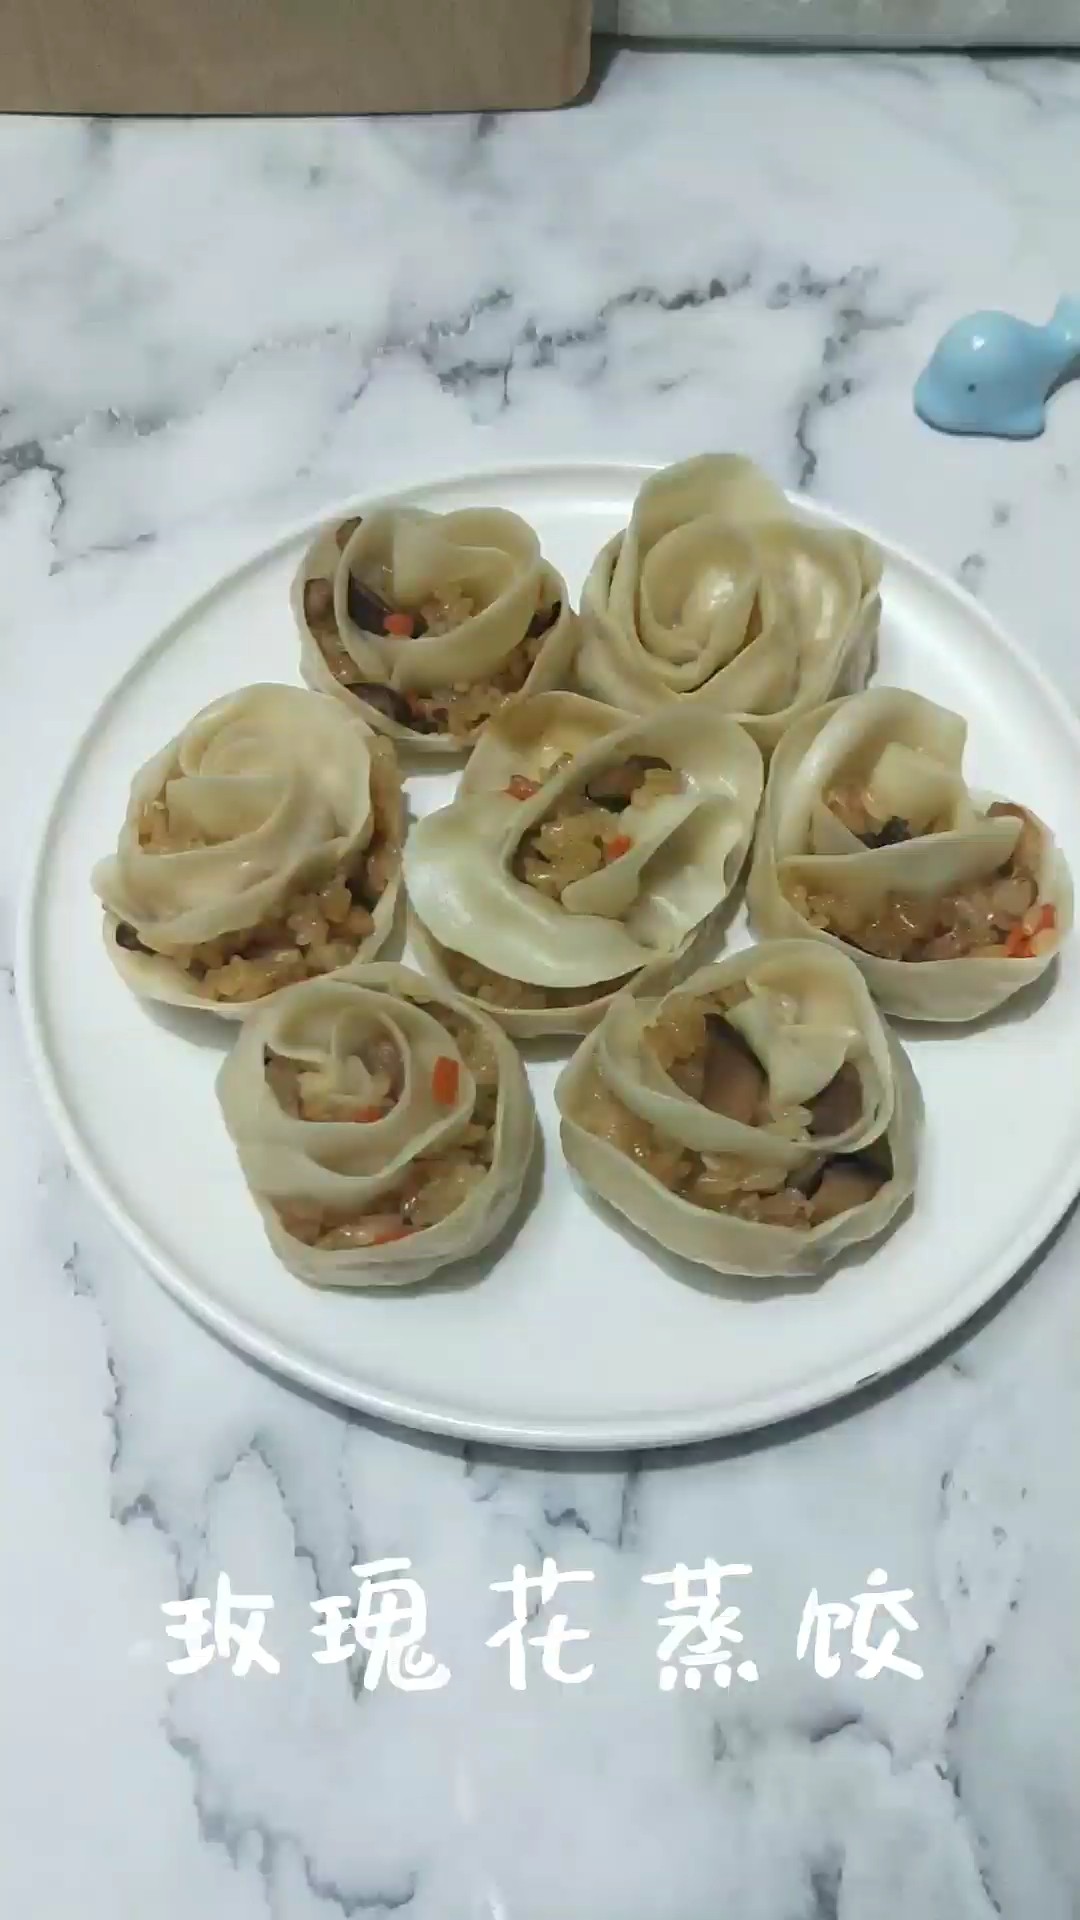 Rose Flower Steamed Dumplings